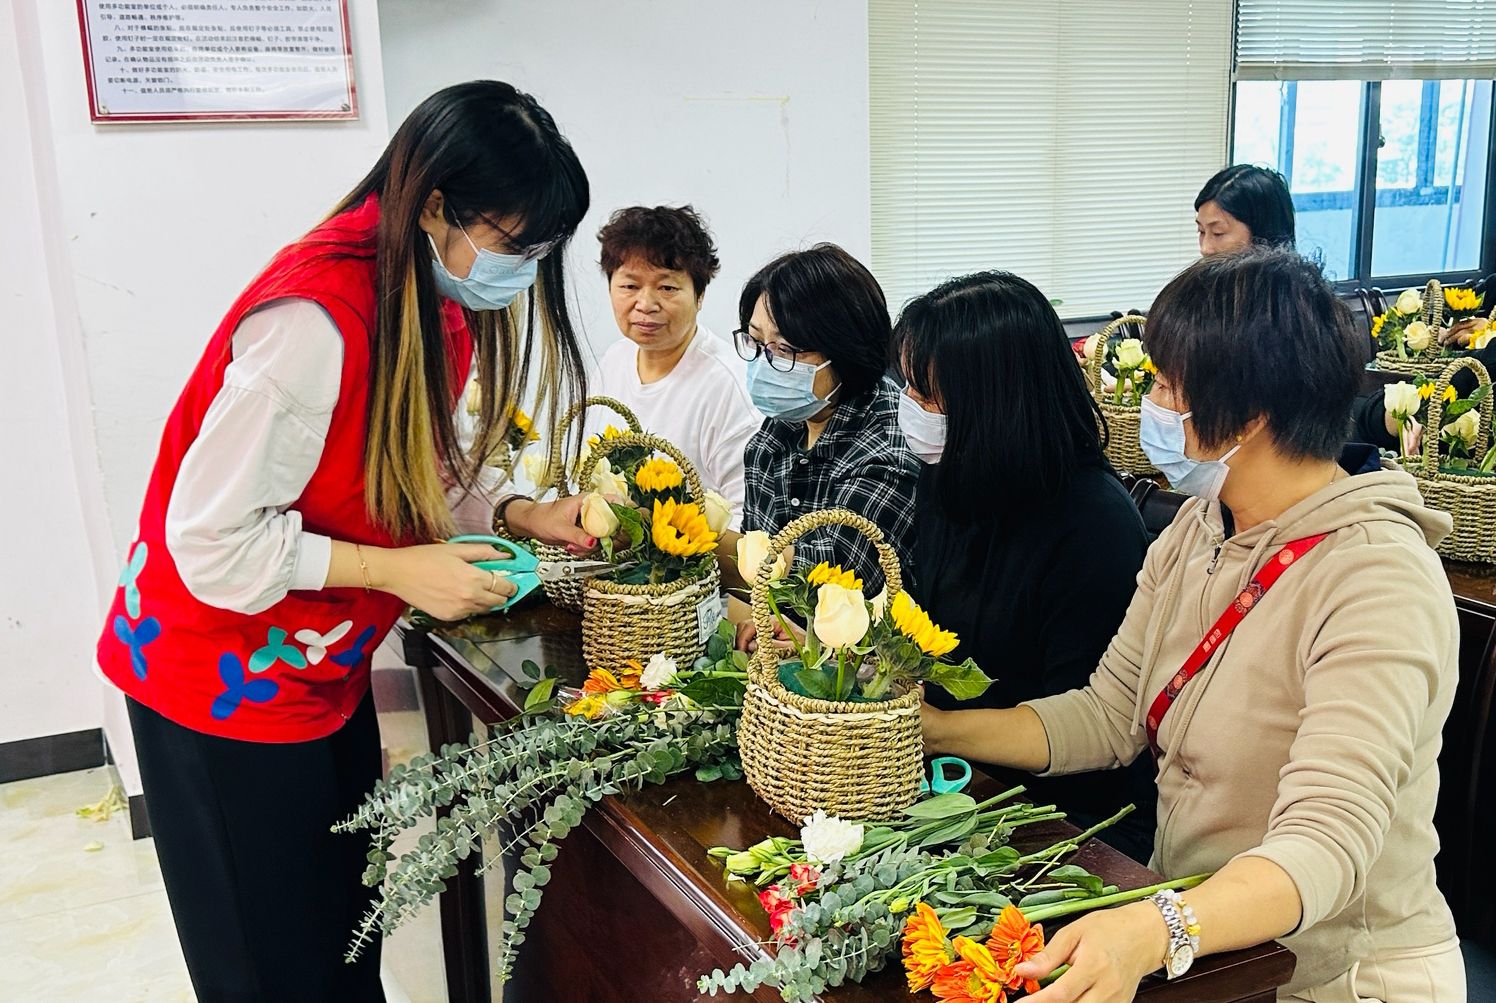 马田街道石家社区展“三八”妇女节插花活动